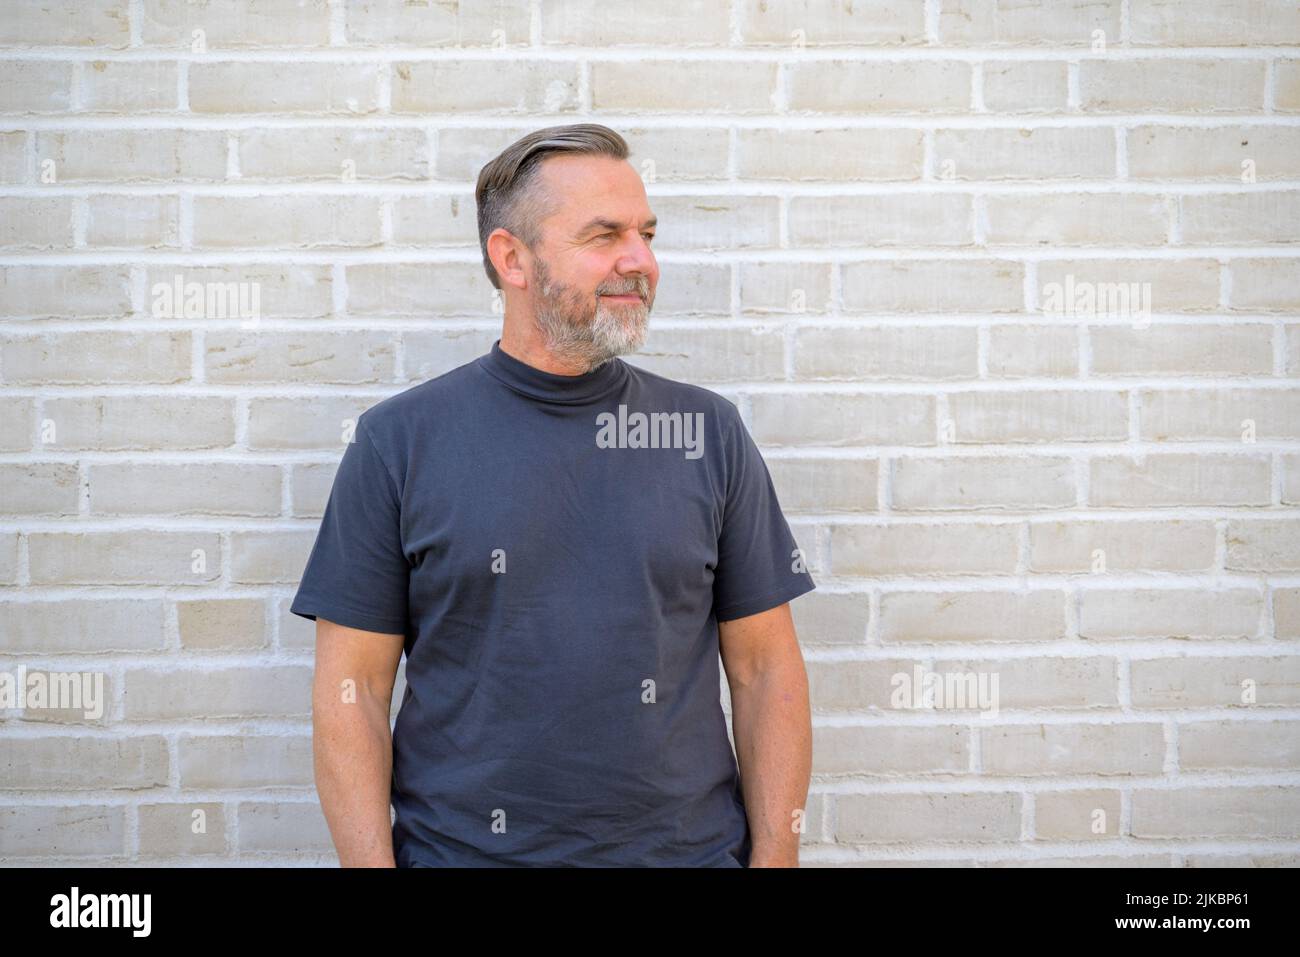 Entspannter bärtiger Mann mittleren Alters im Sommer-T-Shirt, der vor einer Ziegelwand posiert und mit einem Lächeln zur Seite schaut Stockfoto